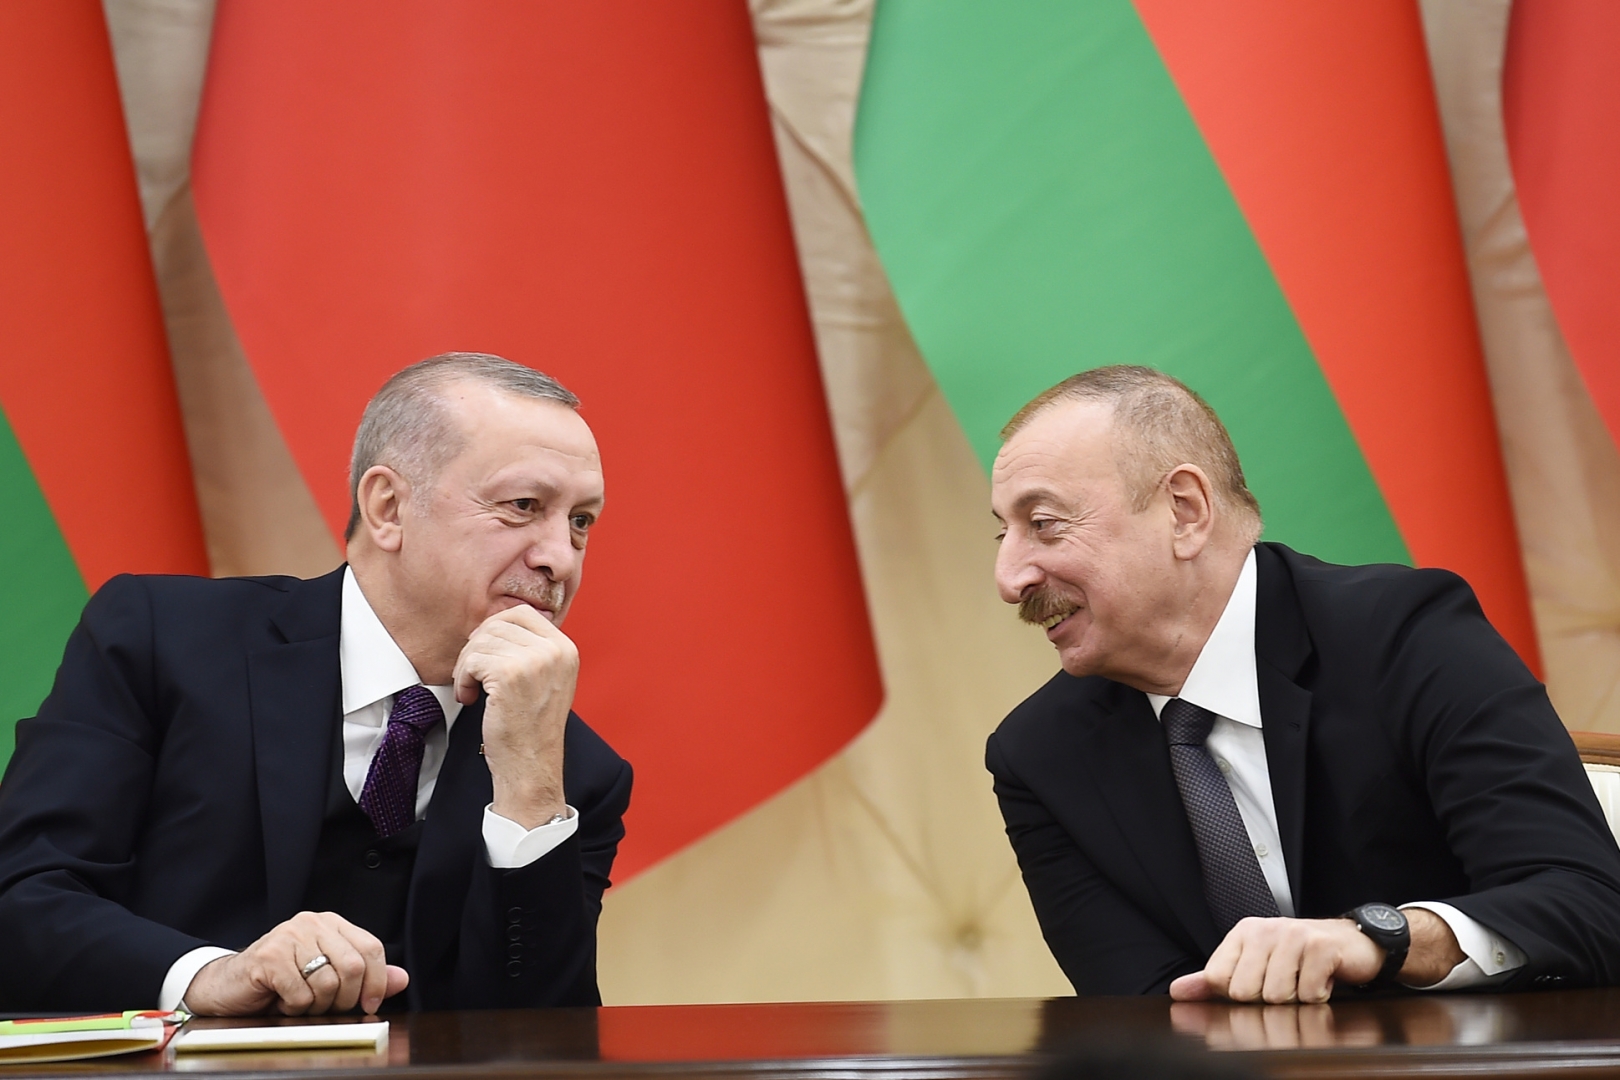 Ալիևն ու Էրդողանը քննարկել են Հայաստանի և Ադրբեջանի միջև խաղաղության պայմանագրի շուրջ բանակցային գործընթացի վերաբերյալ